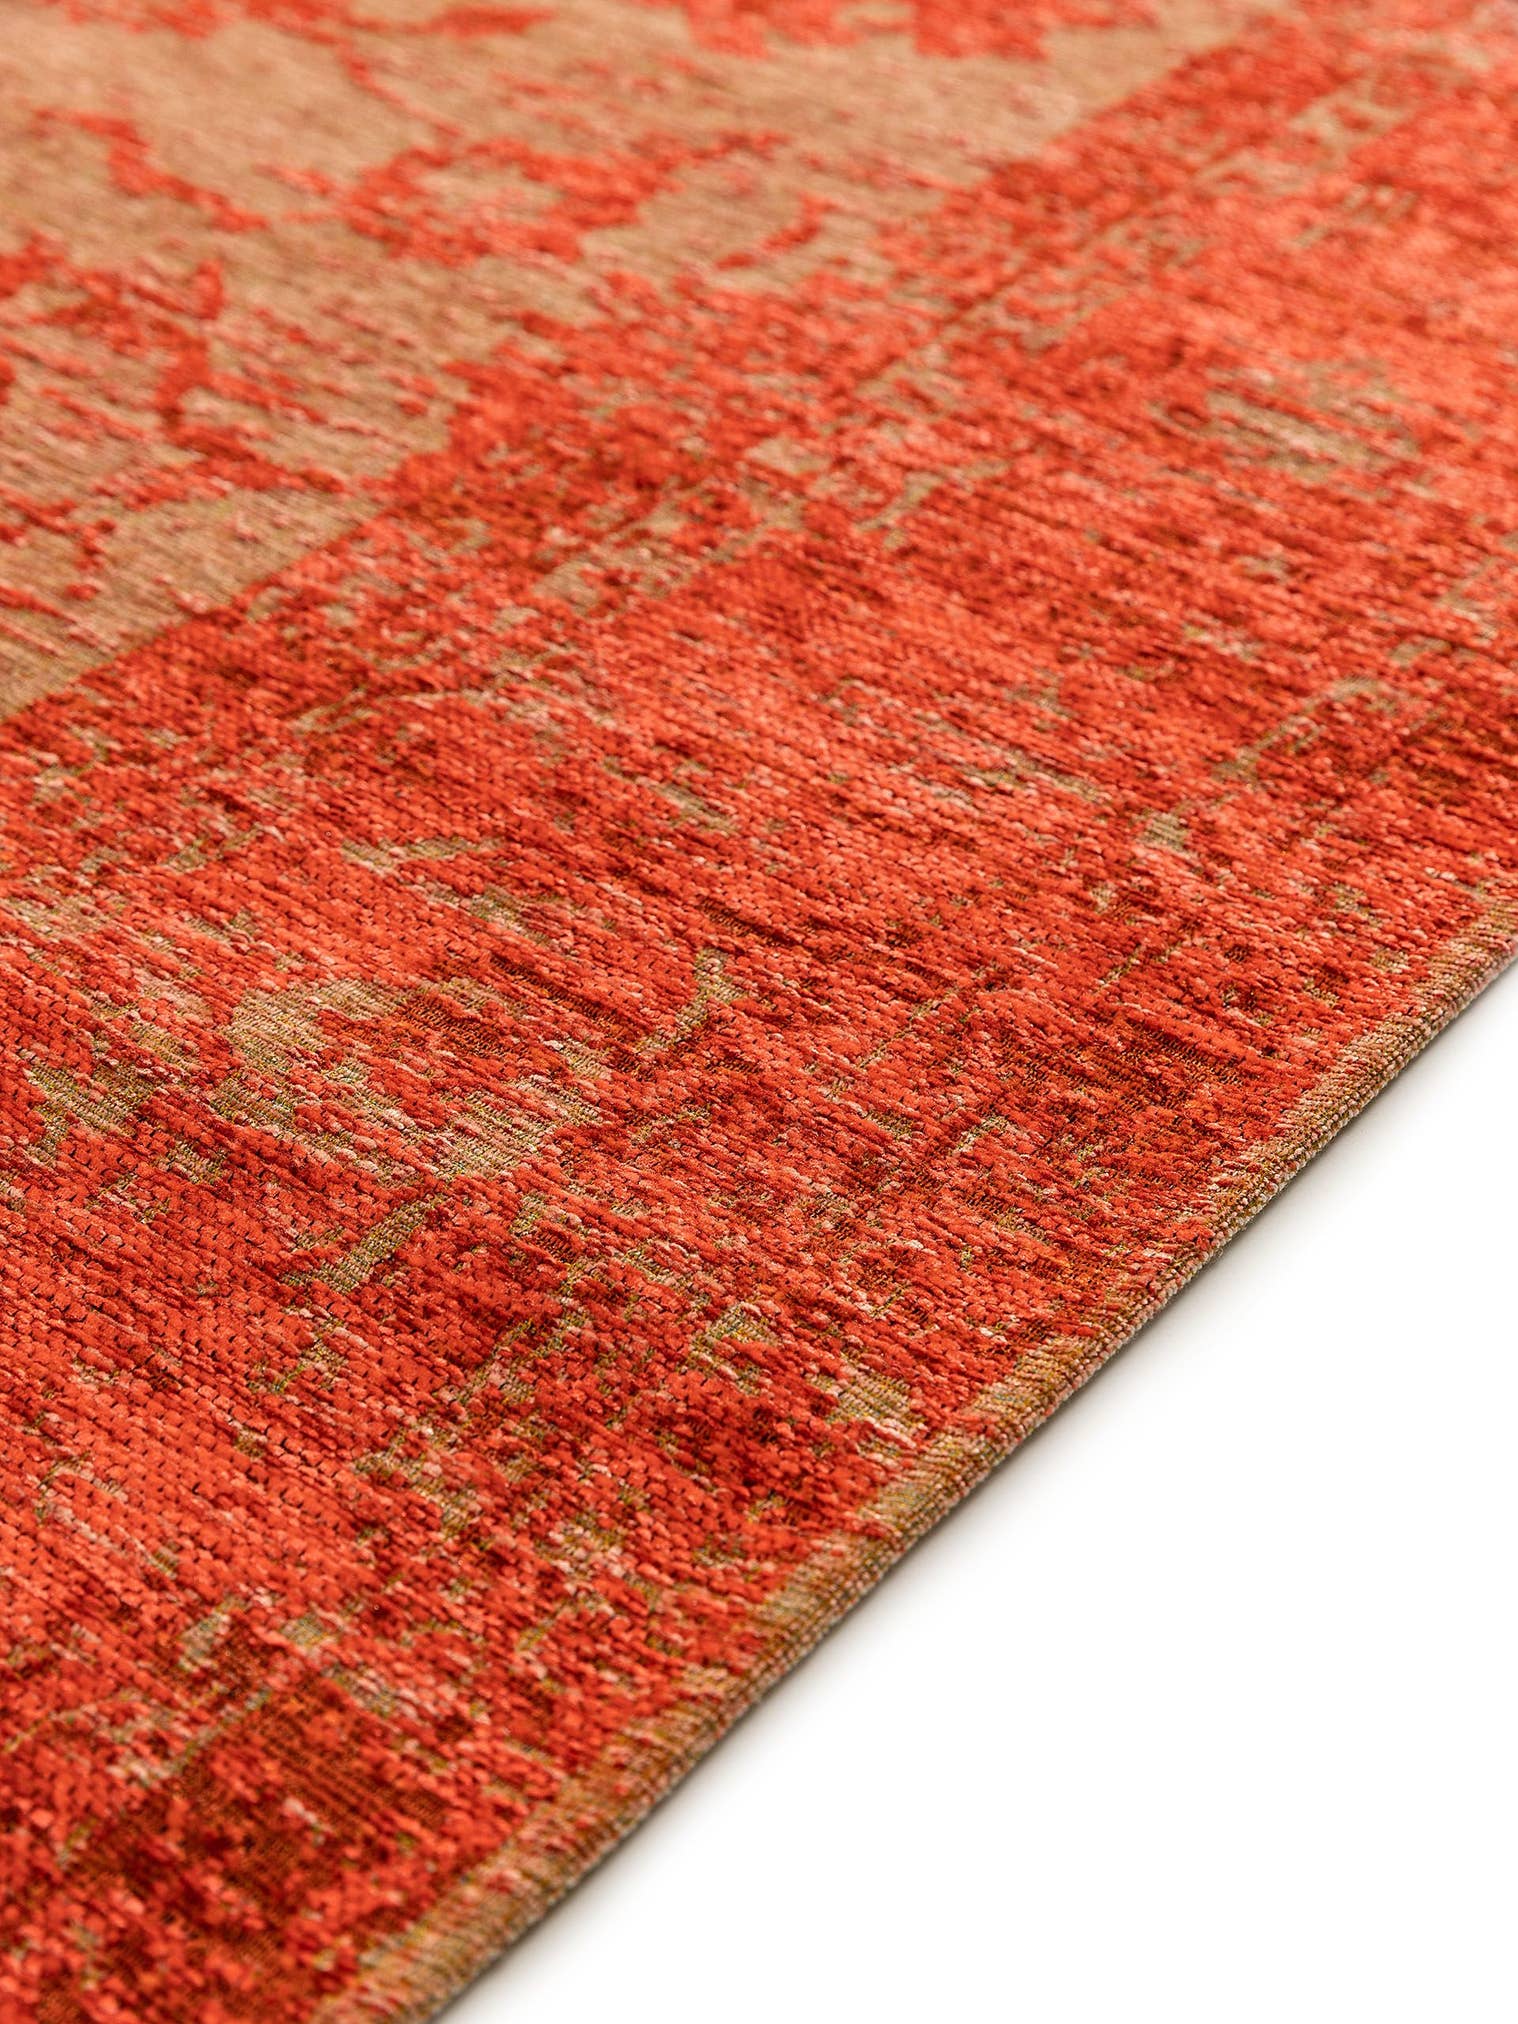 Teppich aus 55% Polyacryl, 27% Polyester, 17% Baumwolle, 1% Latex in Rot mit bis 5 mm hohem Flor von benuta Nest